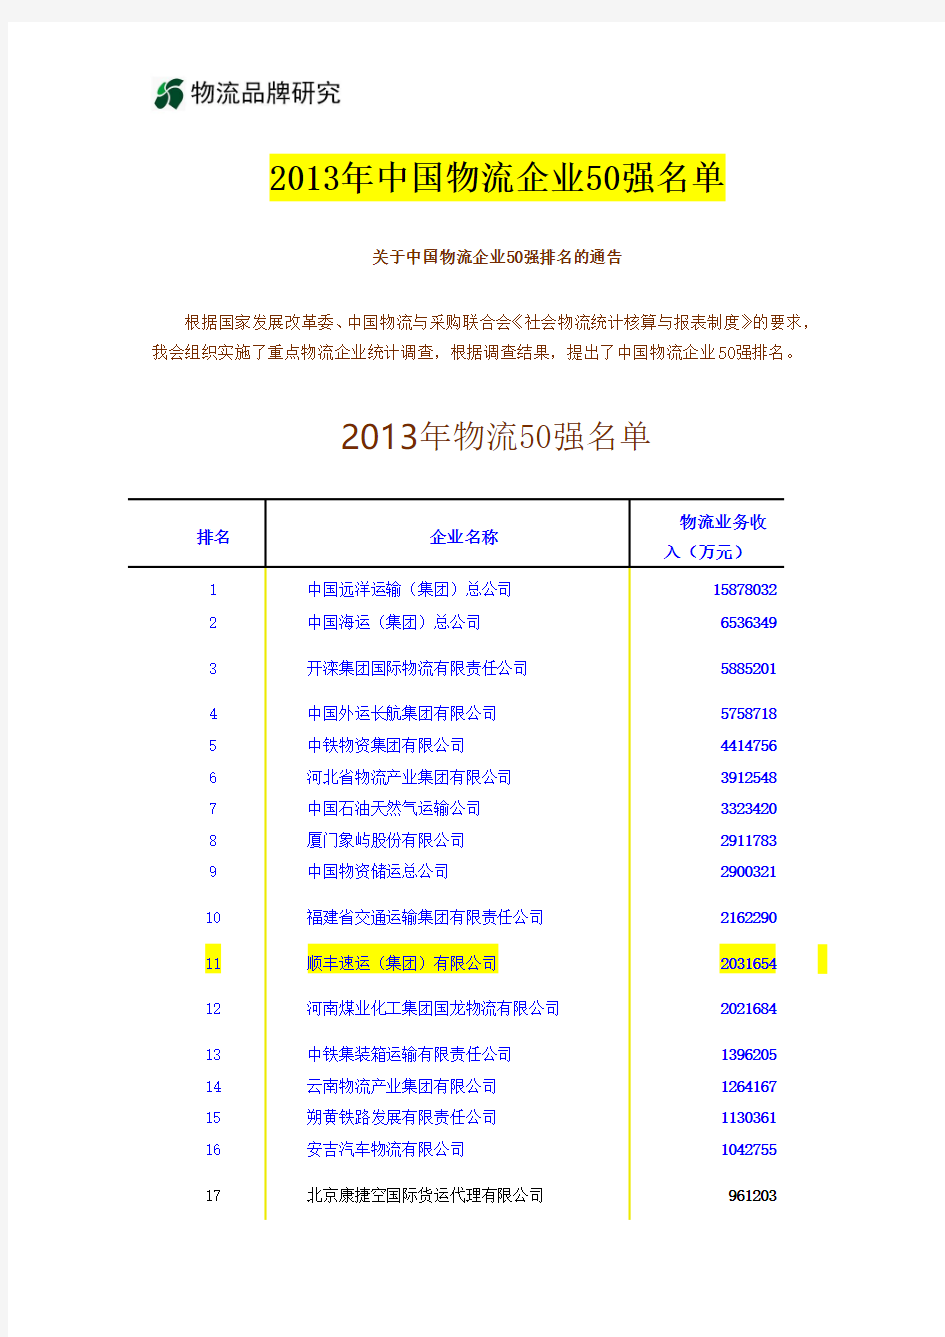 2013年中国物流企业50强名单